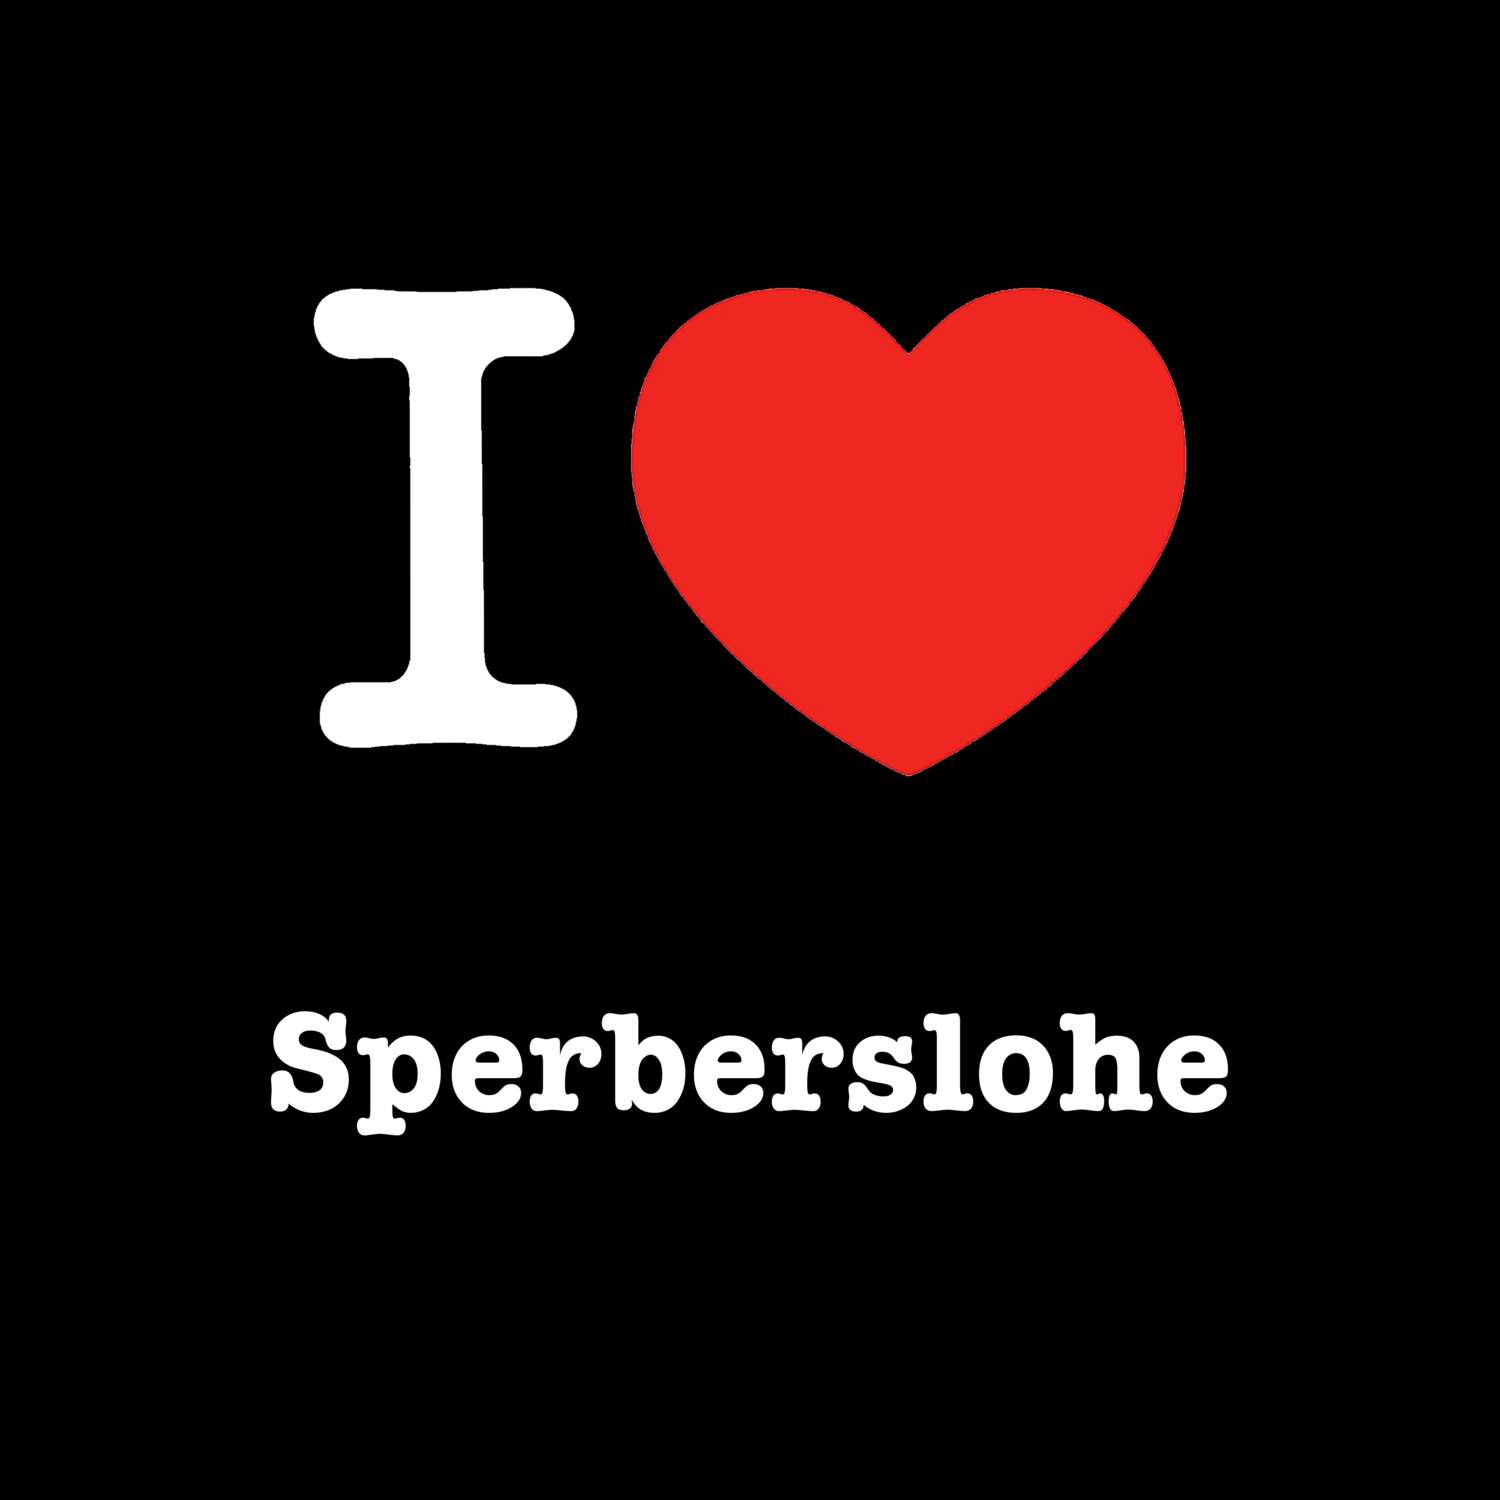 Sperberslohe T-Shirt »I love«